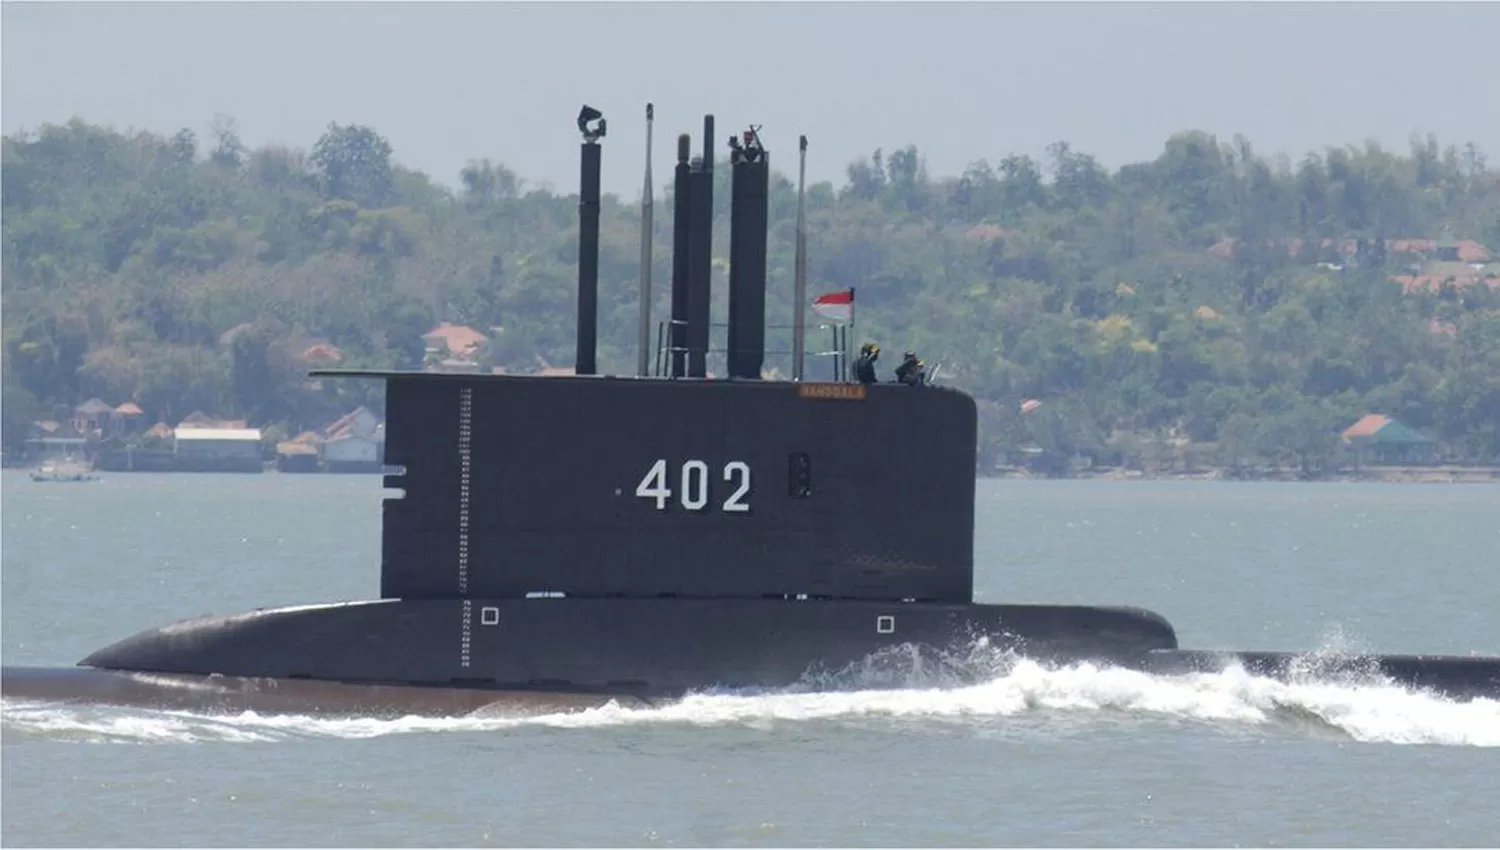 FLOTA. KRI Nanggala 402 es uno de los cinco submarinos indonesios.